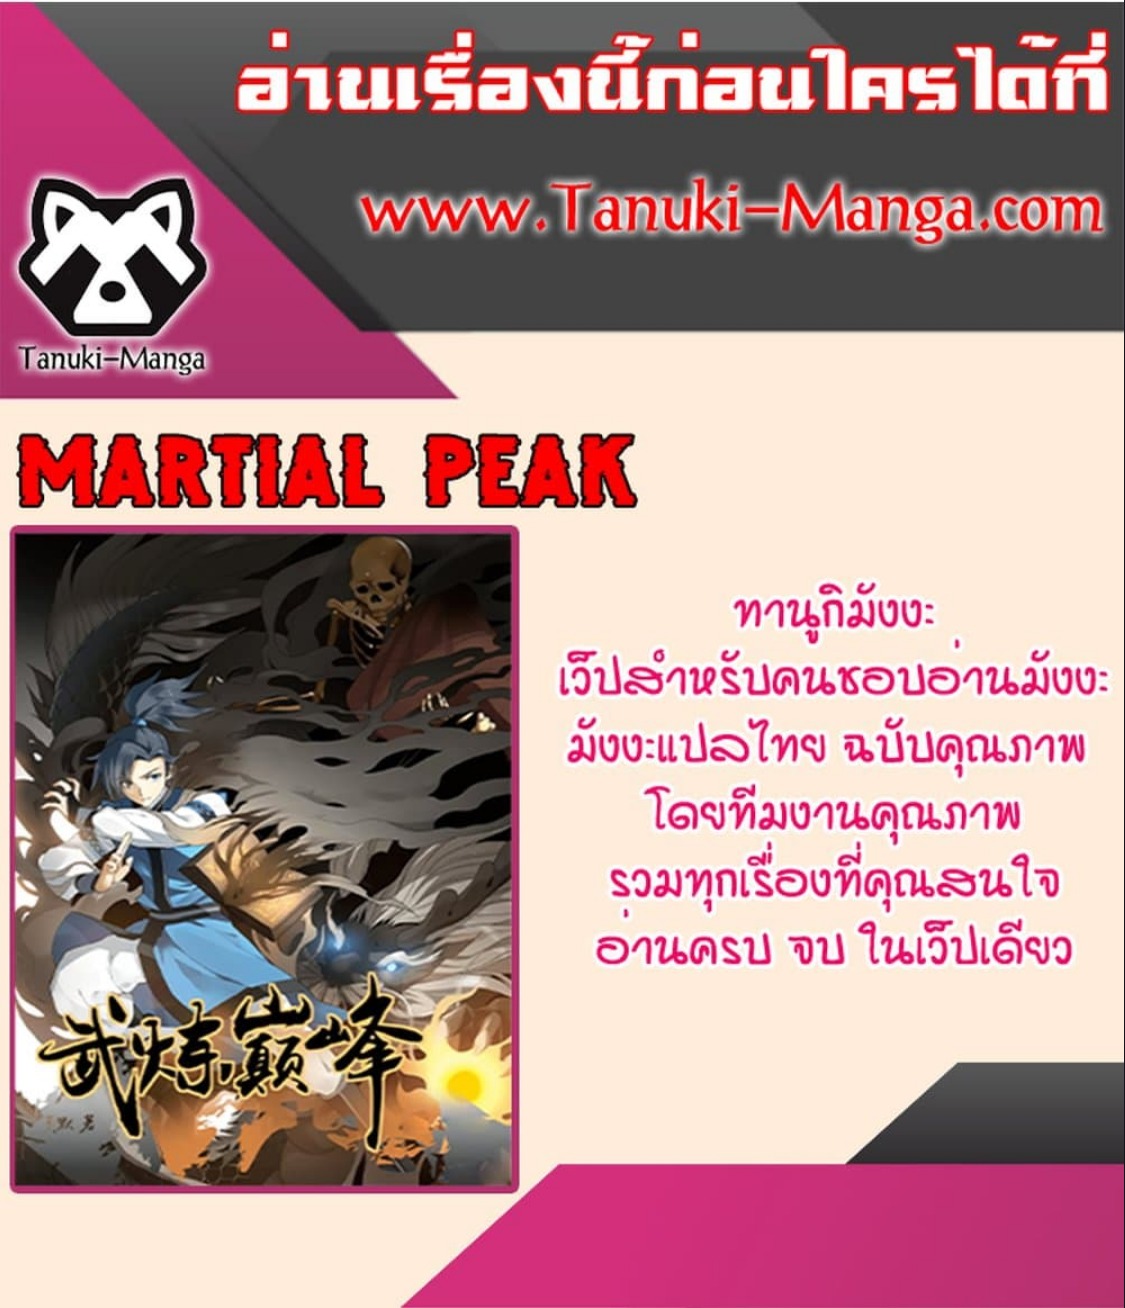 Martial Peak2866 (5)